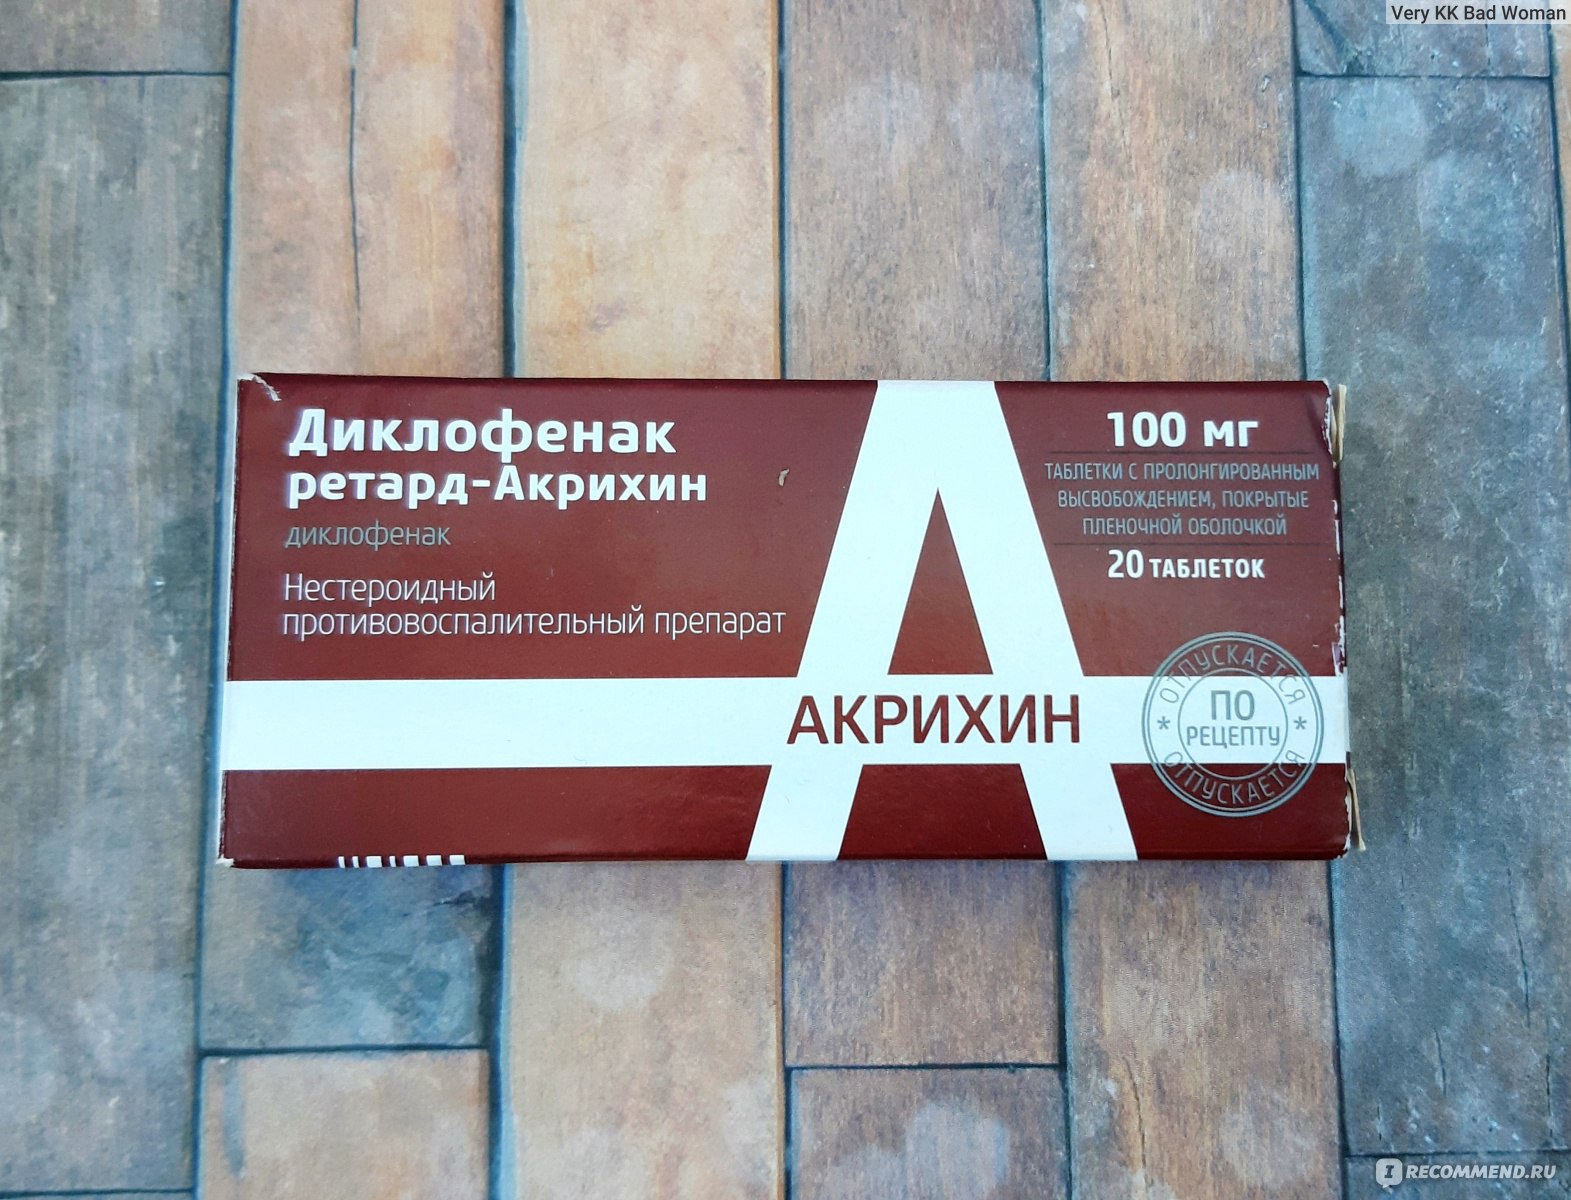 Нестероидное противовоспалительное средство Акрихин Диклофенак .